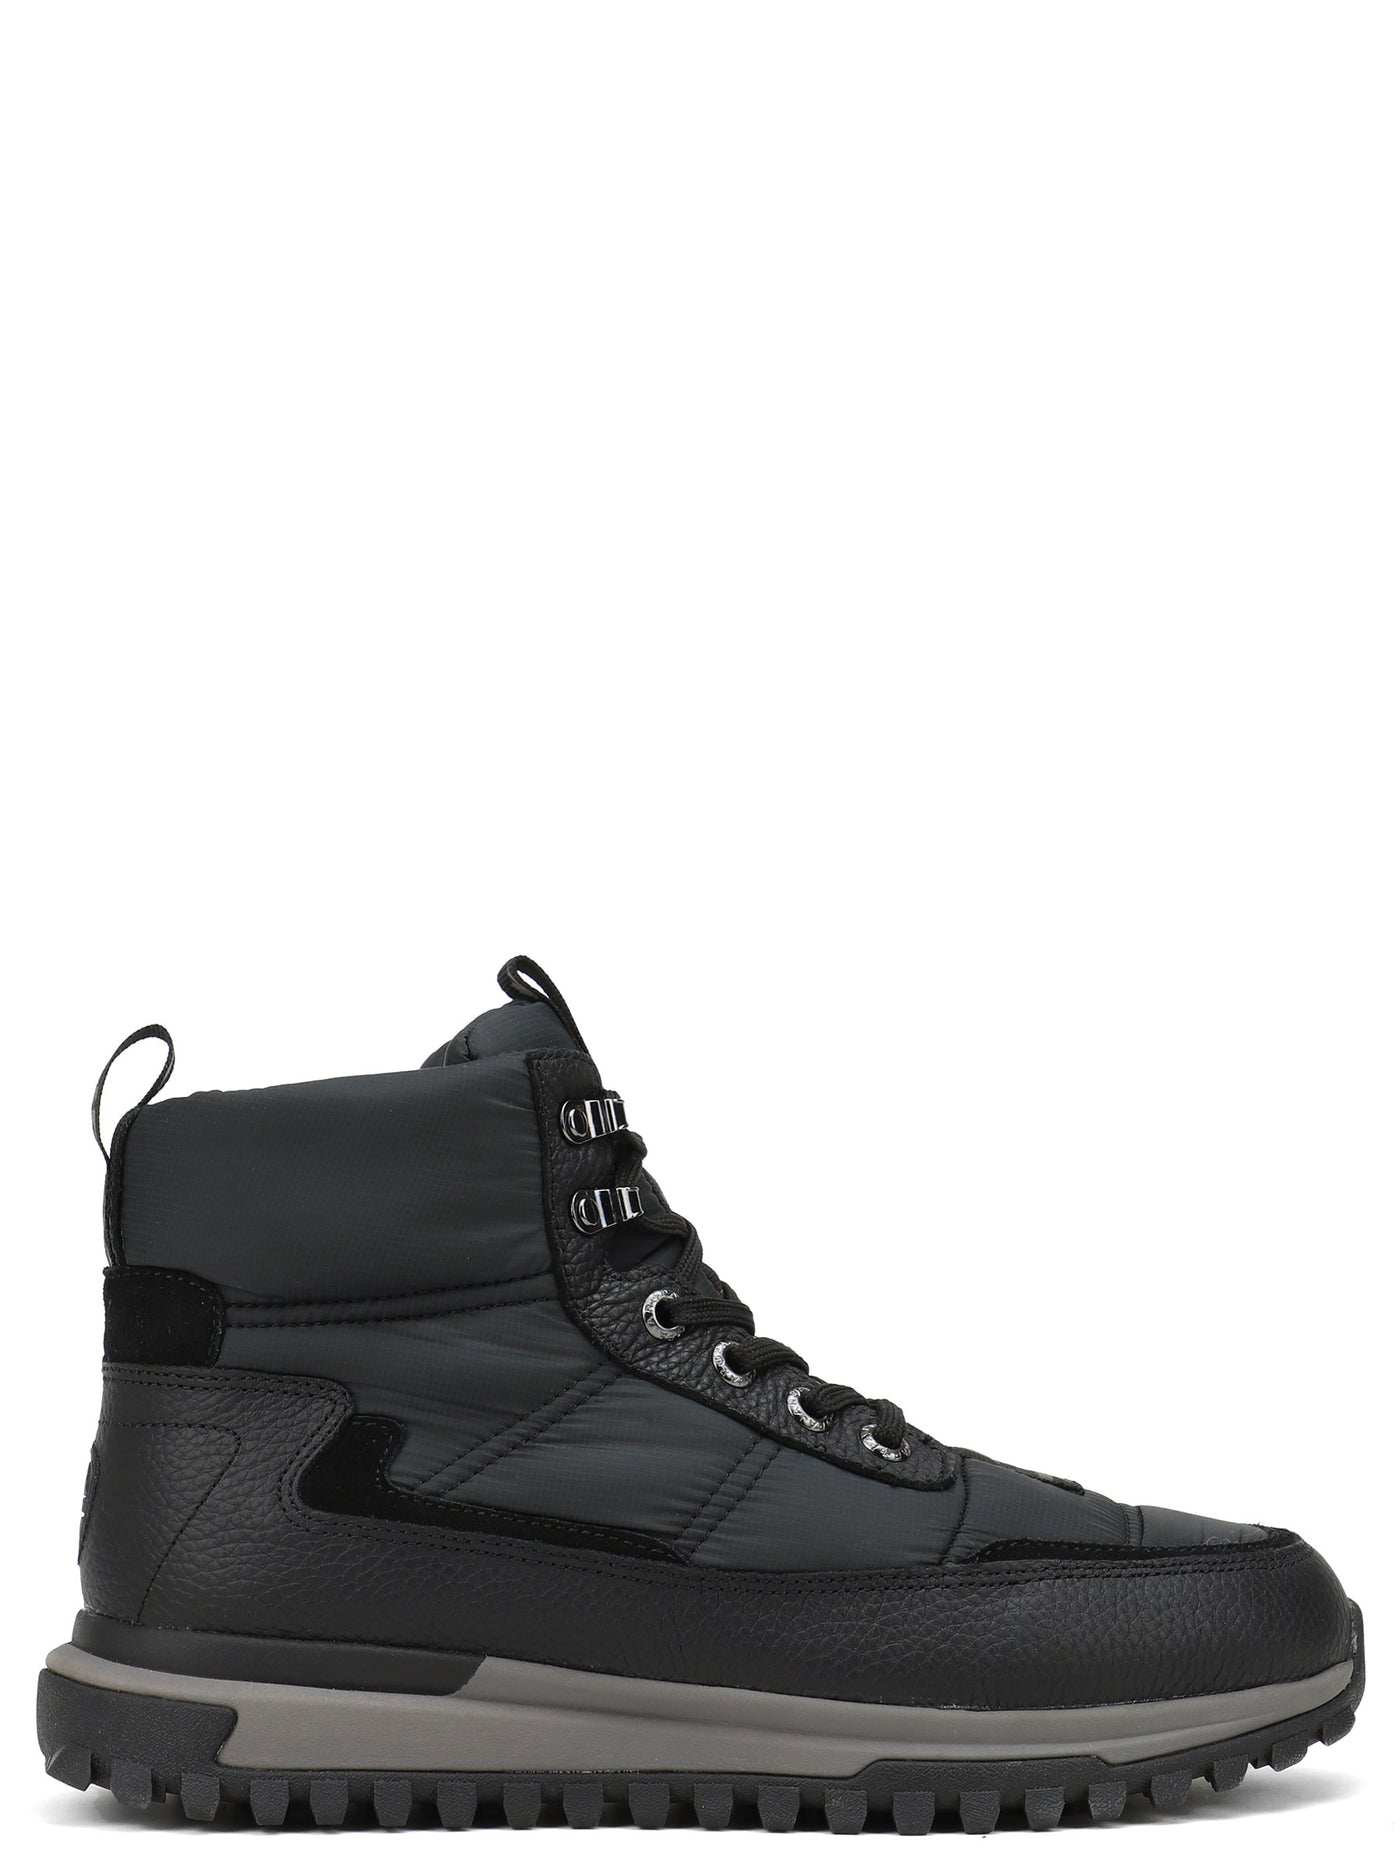 Fero Men's Sneaker Boot